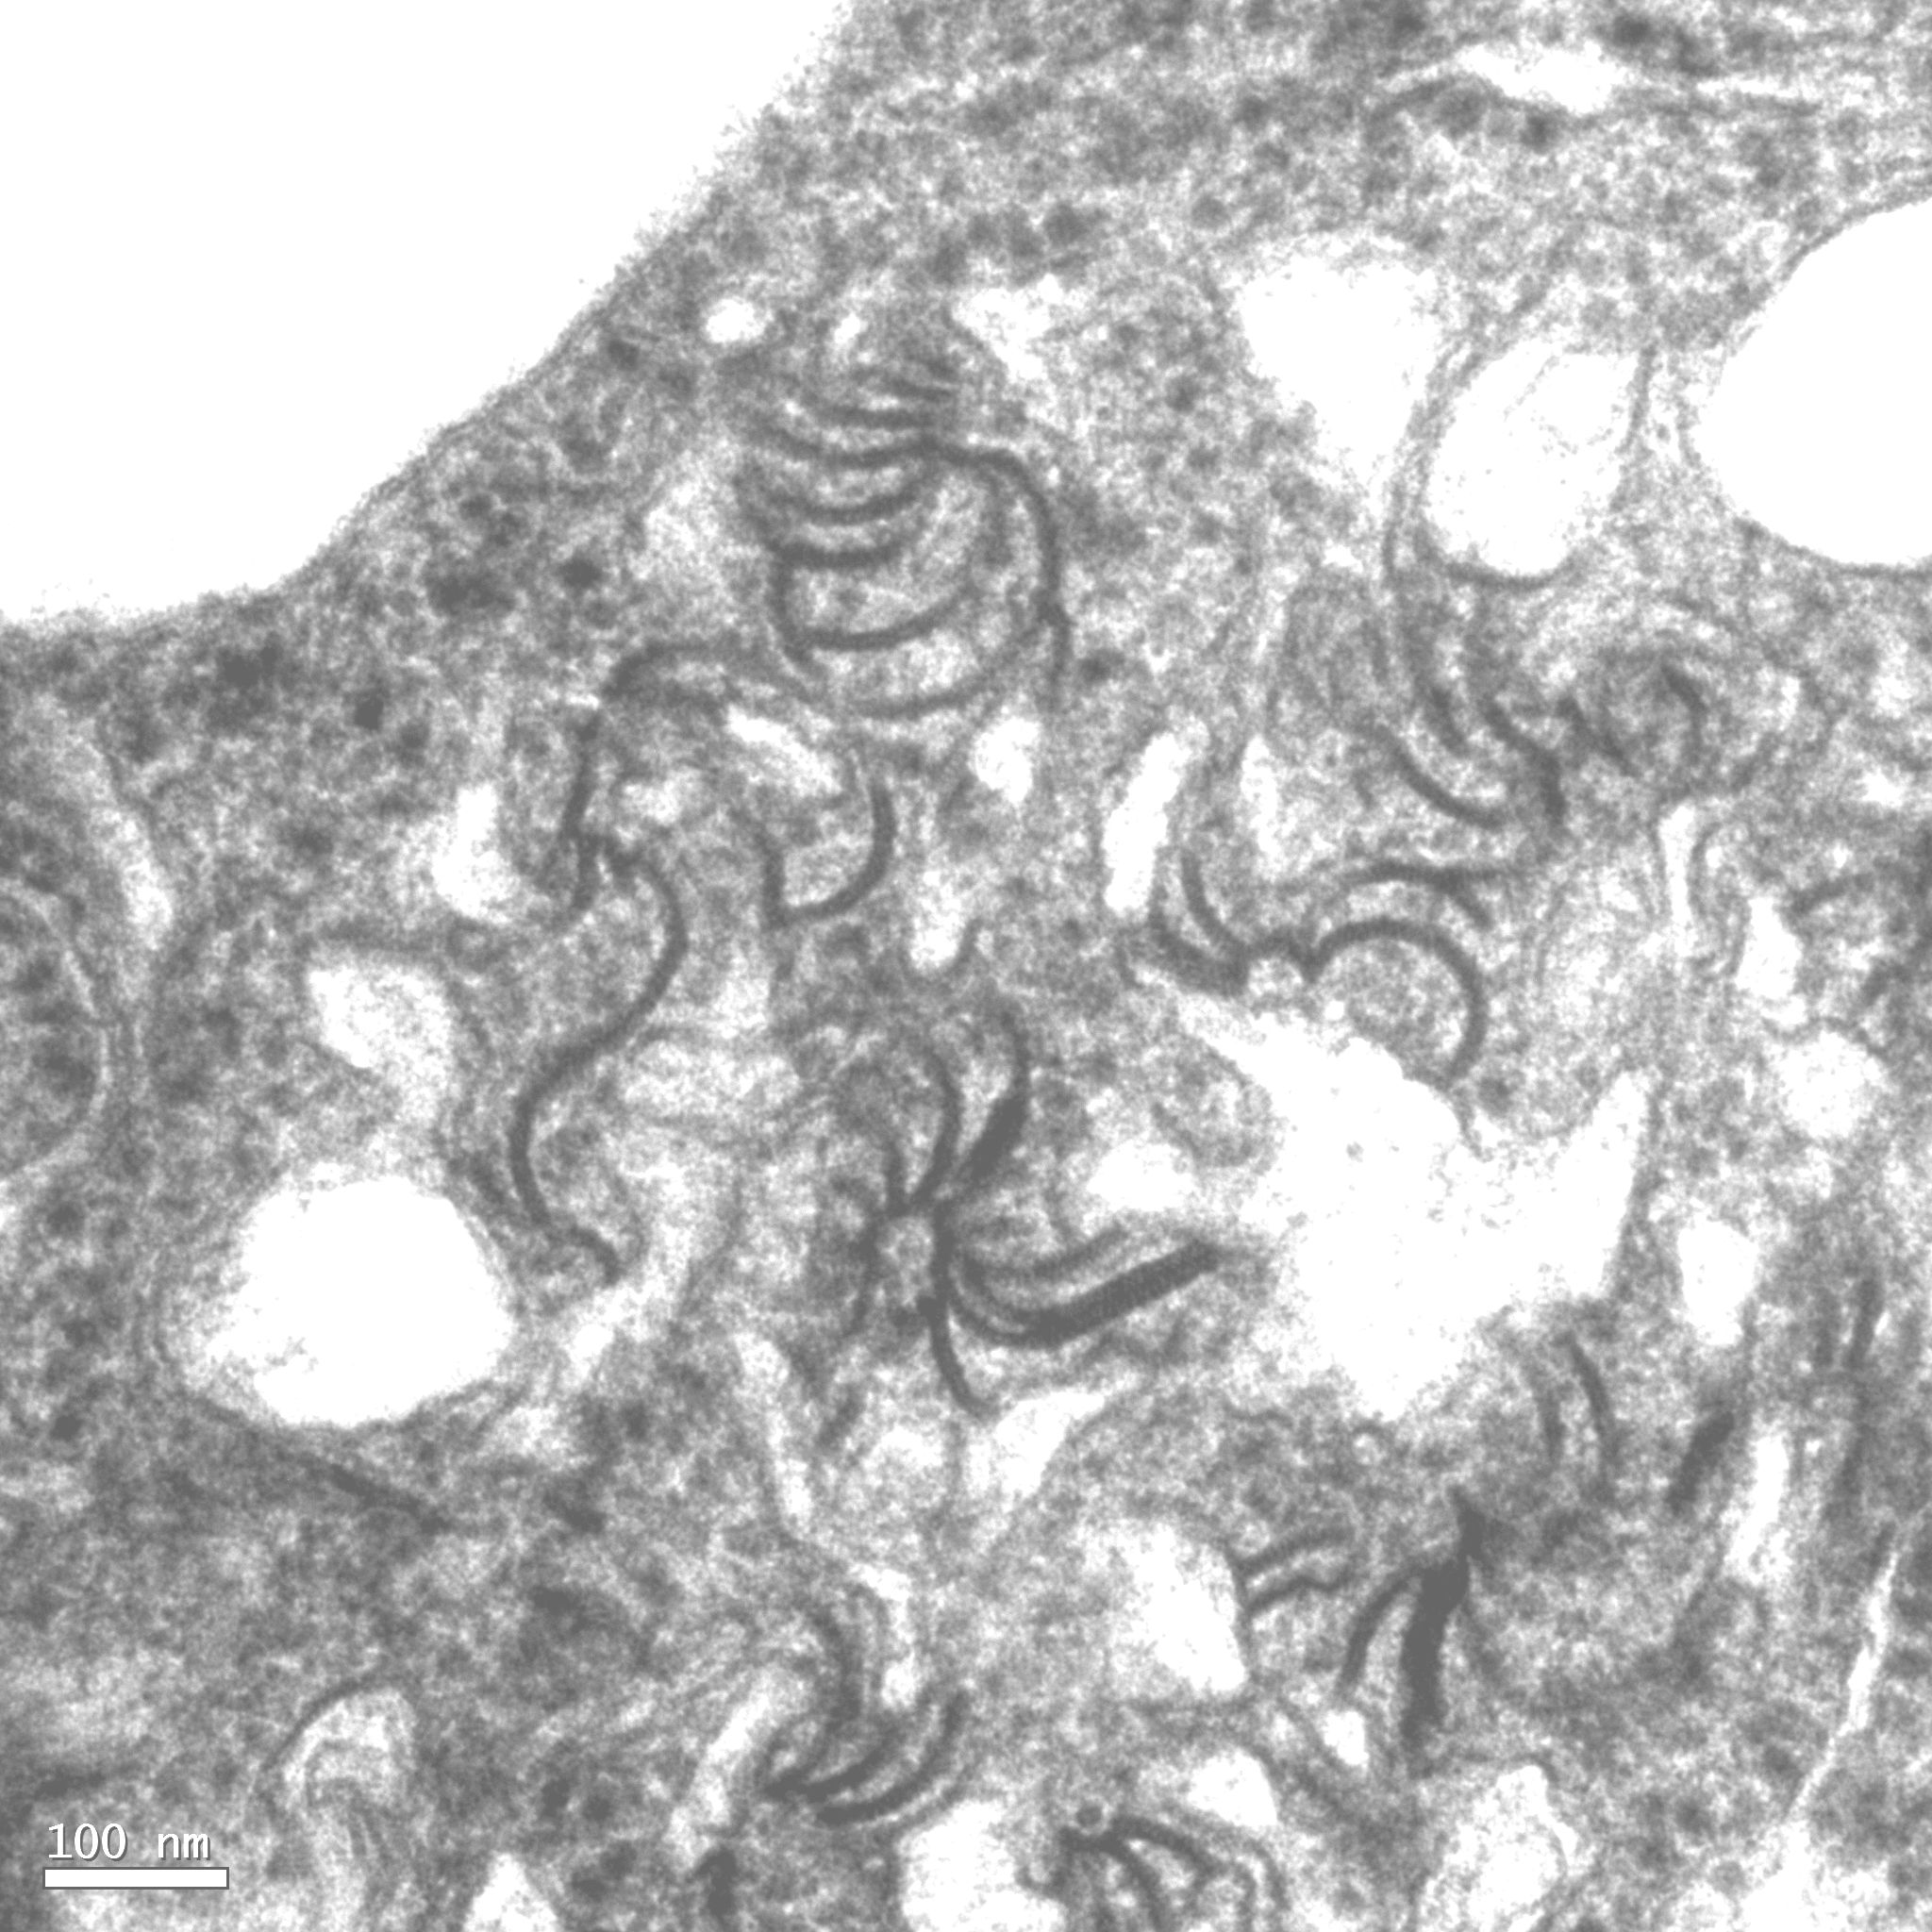 <p><b><p>Secções ultra-finas de folhas de gloriosa, naturalmente infectada, mostrando inclusões lamelares (LI) e alguns cata-ventos (“pinheels”) típicos de infecção causada por <em>Potyvirus</em>.</p></b></p><p>Autor: E.W. Kitajima</p>